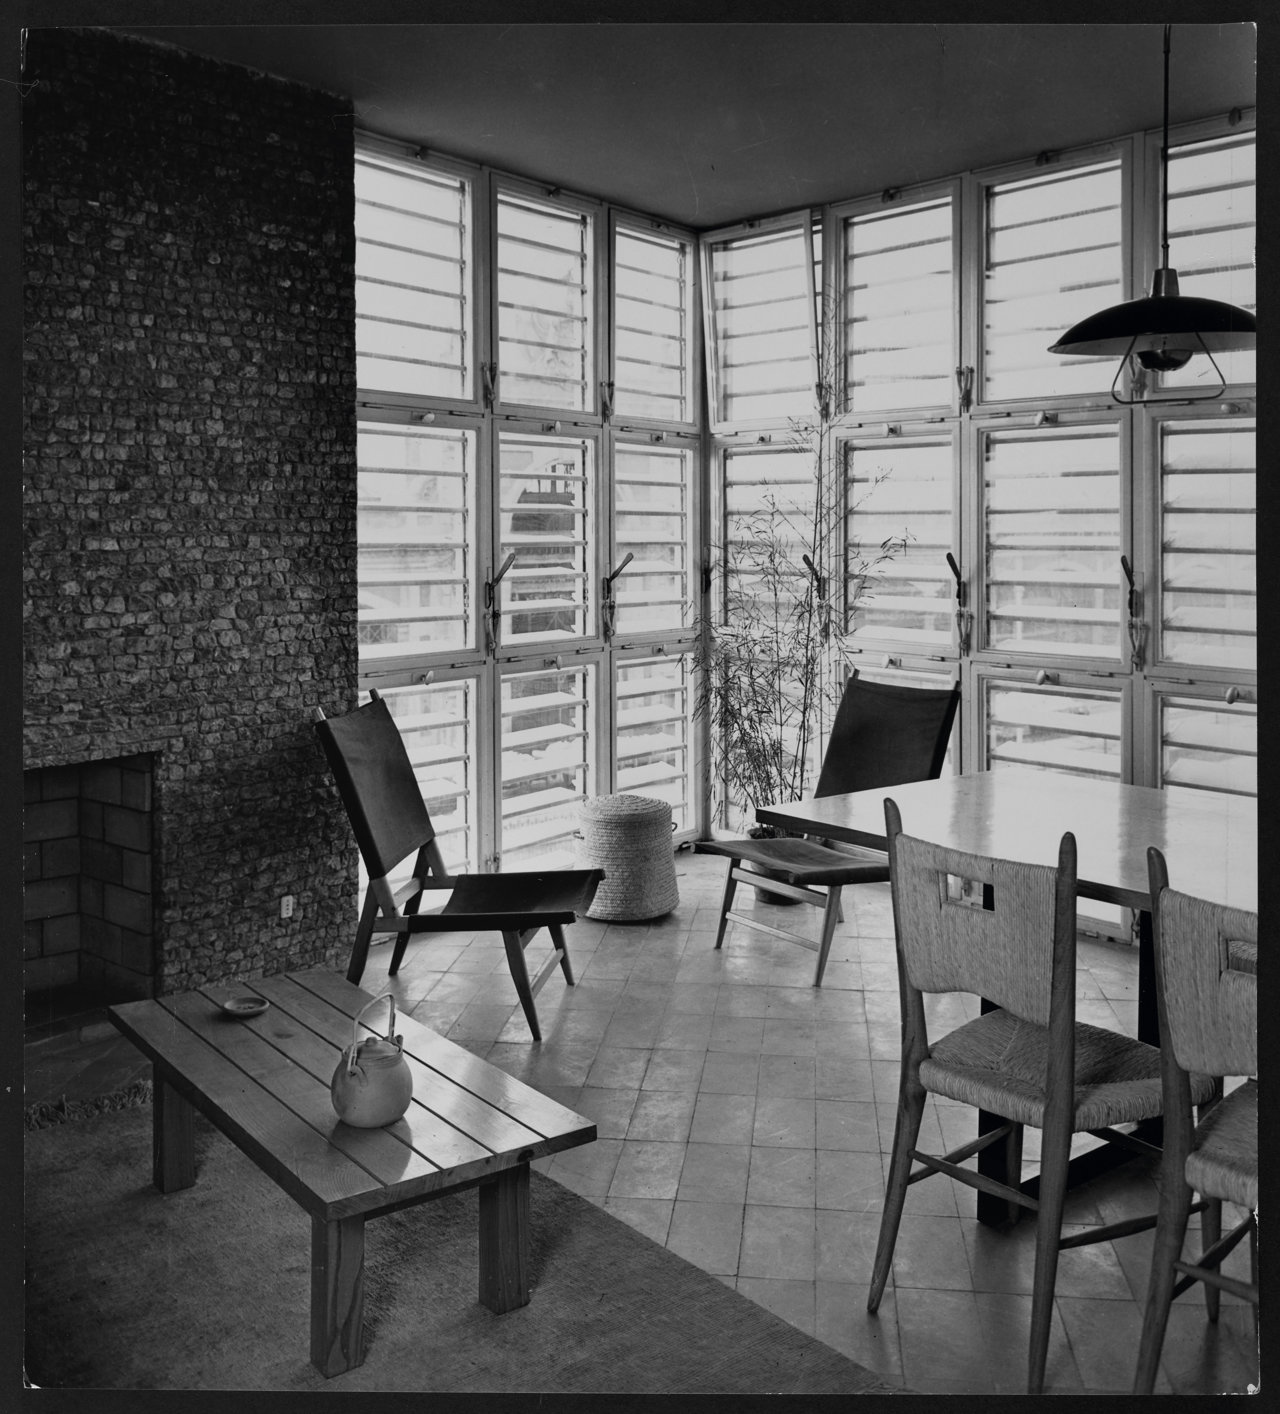 La Barceloneta, viviendas para el Instituto Social de la Marina, Barcelona, 1951. “Con ella, tras la casa Ugalde, creo haber encontrado la buena vía. Ambas, buenas o malas, son verdaderamente mías”